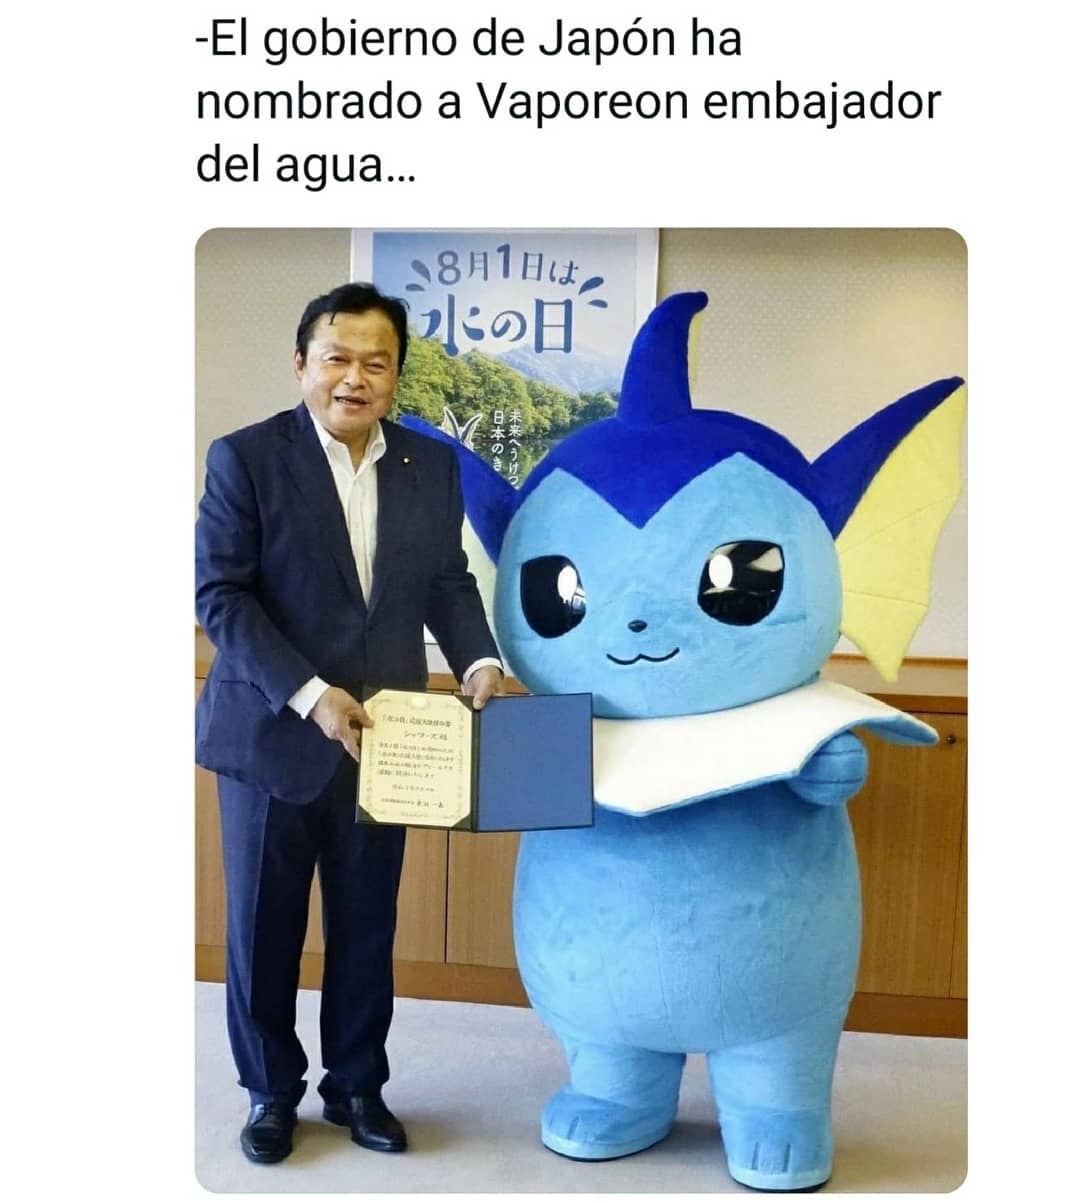 El gobierno de Japón ha nombrado a Vaporeon embajador del agua...